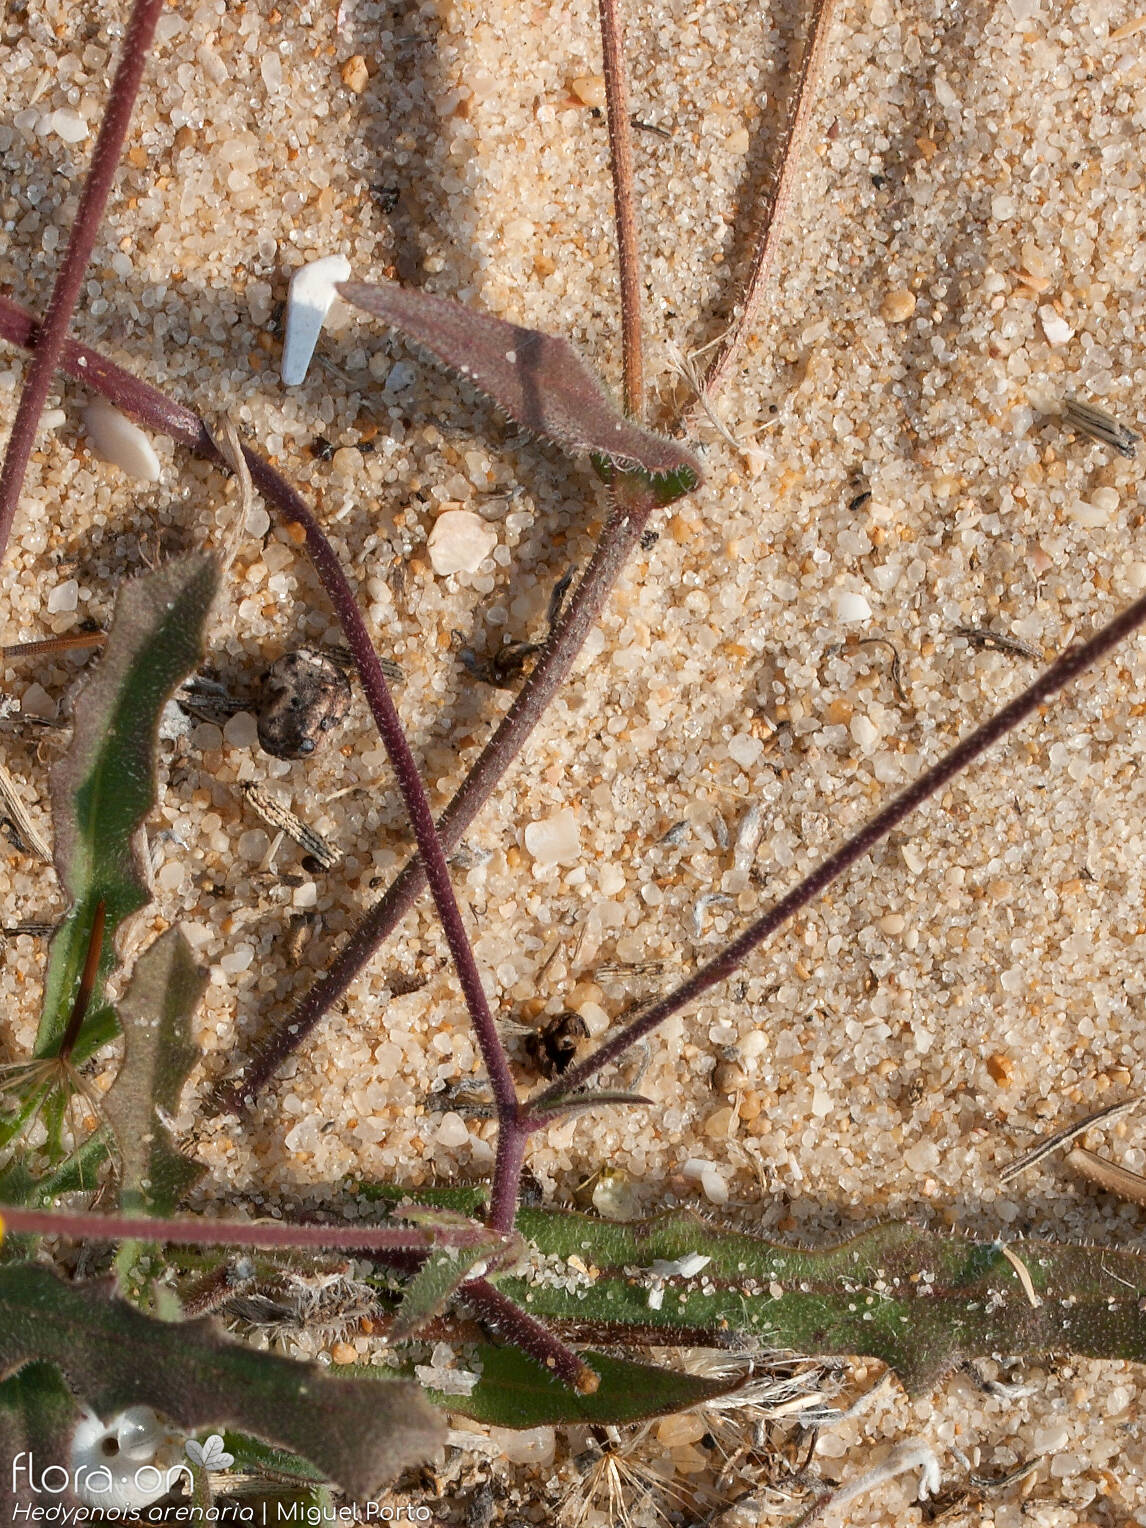 Hedypnois arenaria - Caule | Miguel Porto; CC BY-NC 4.0